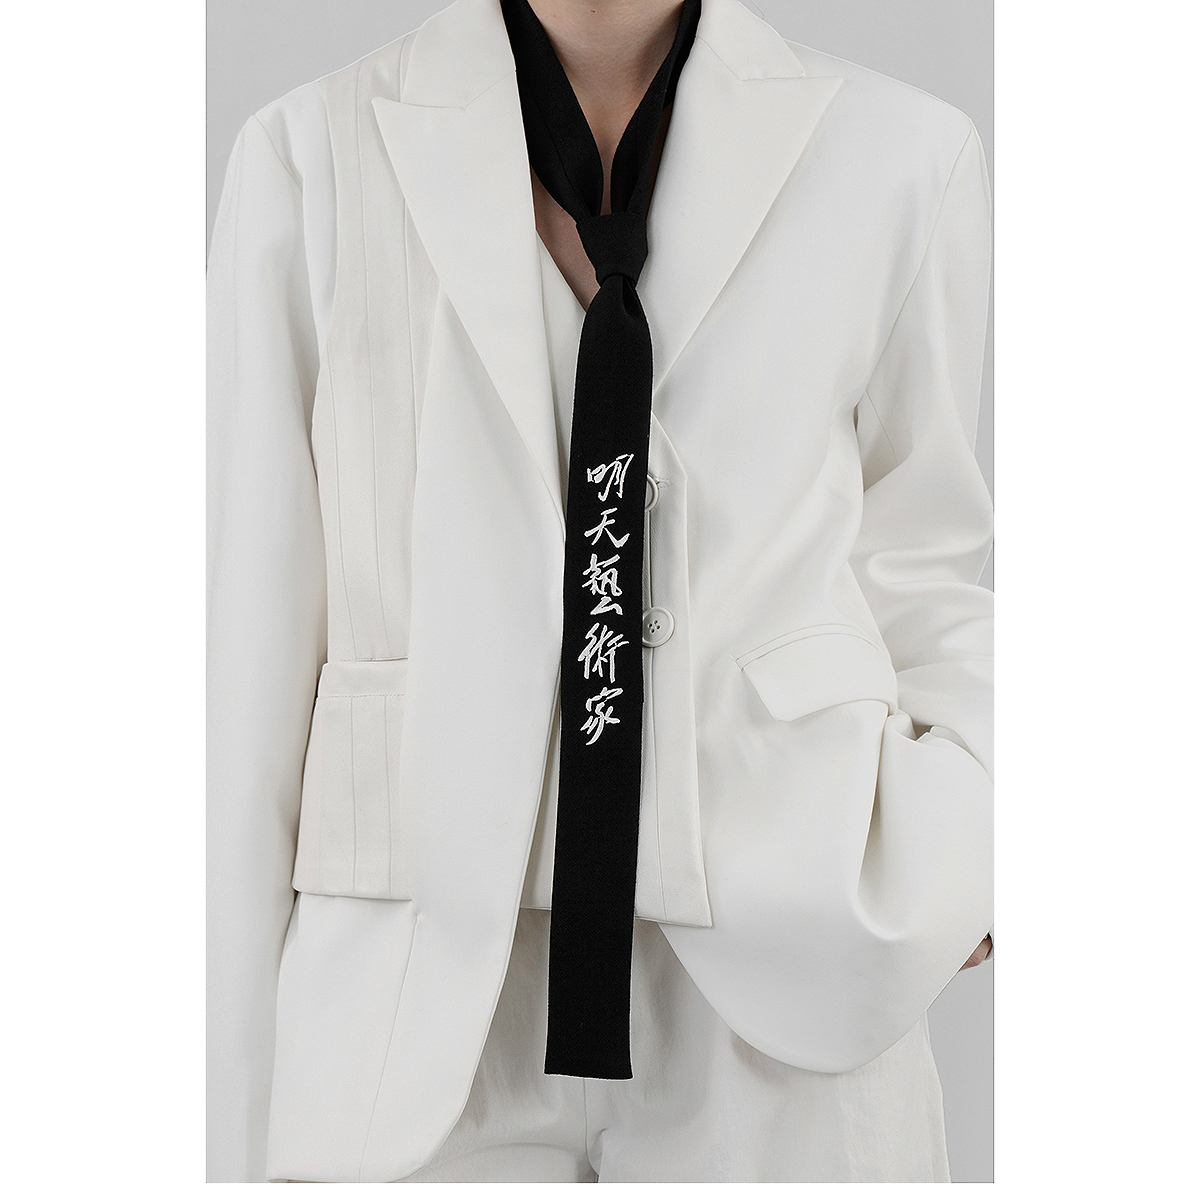 明天藝術家19A/W02  冬季新品男女同款品牌logo刺绣高级羊毛领带